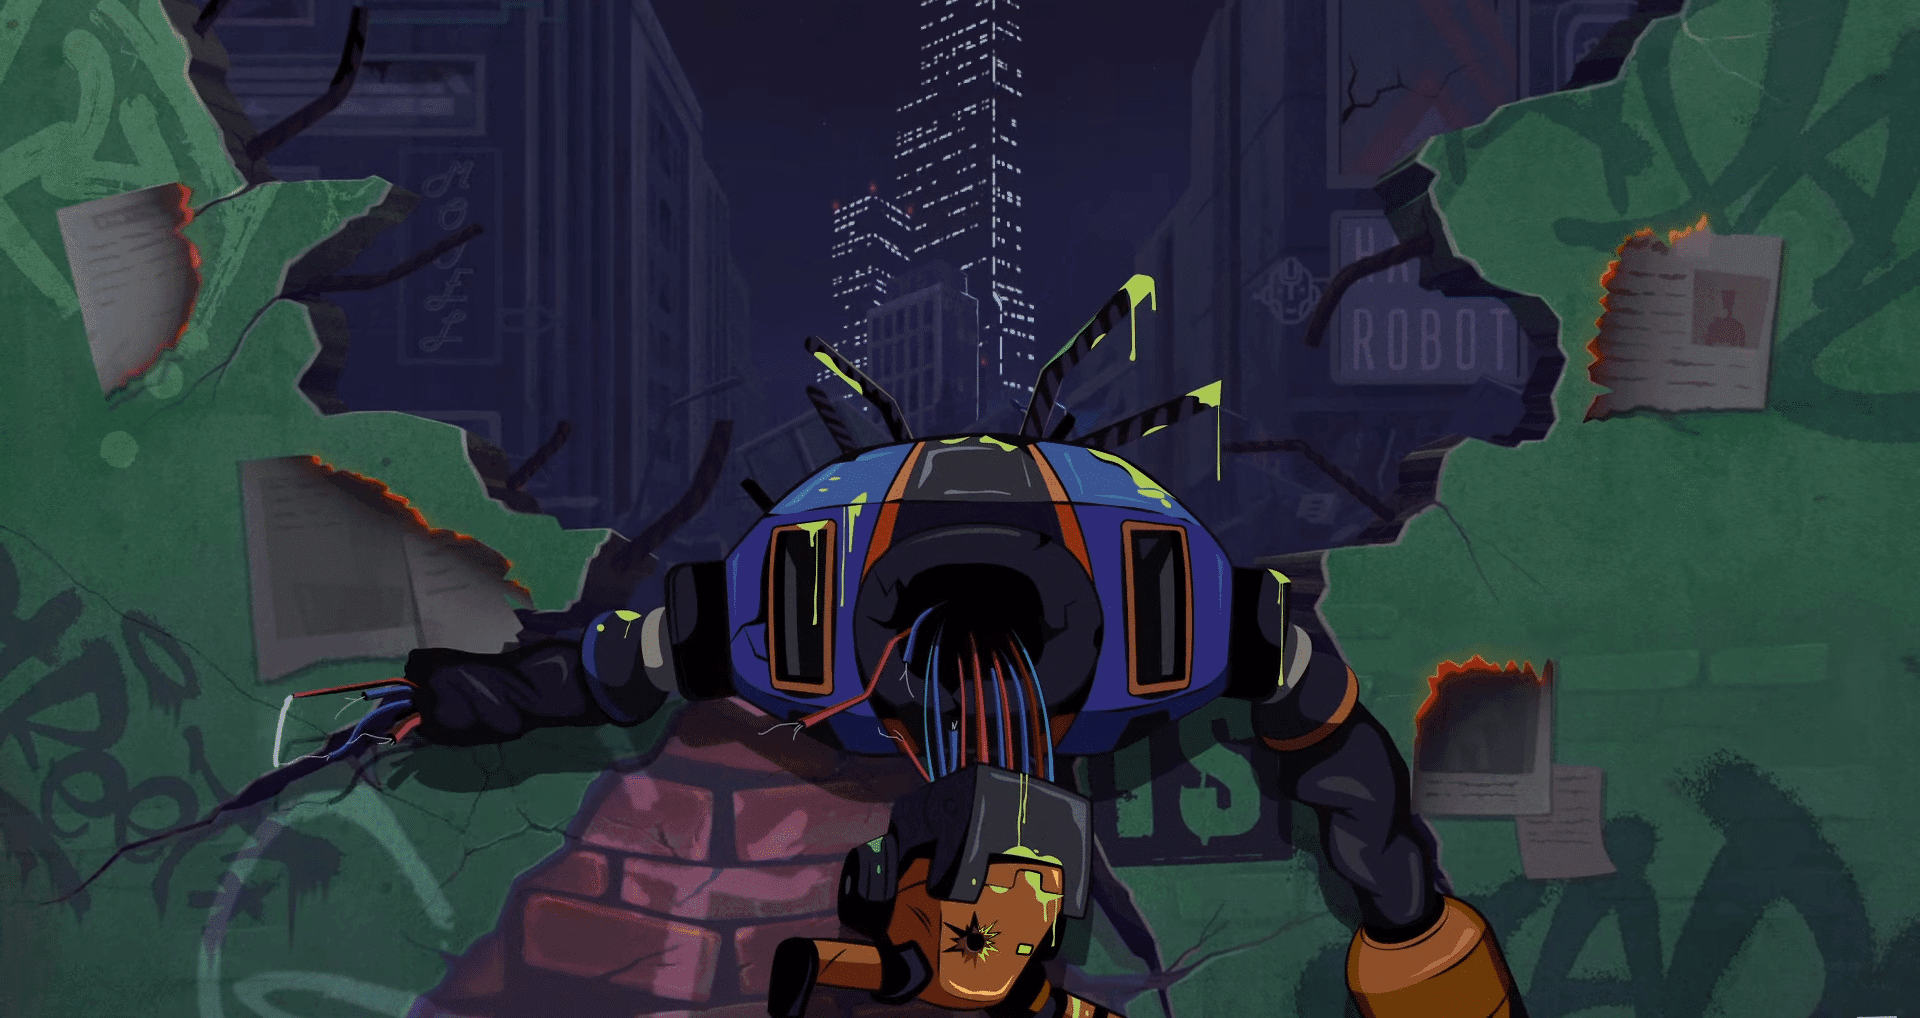 Drunk Robots, un RPG NFT sur la chaîne BNB, plonge les joueurs dans la ville post-apocalyptique de Los Machines pour une action palpitante.